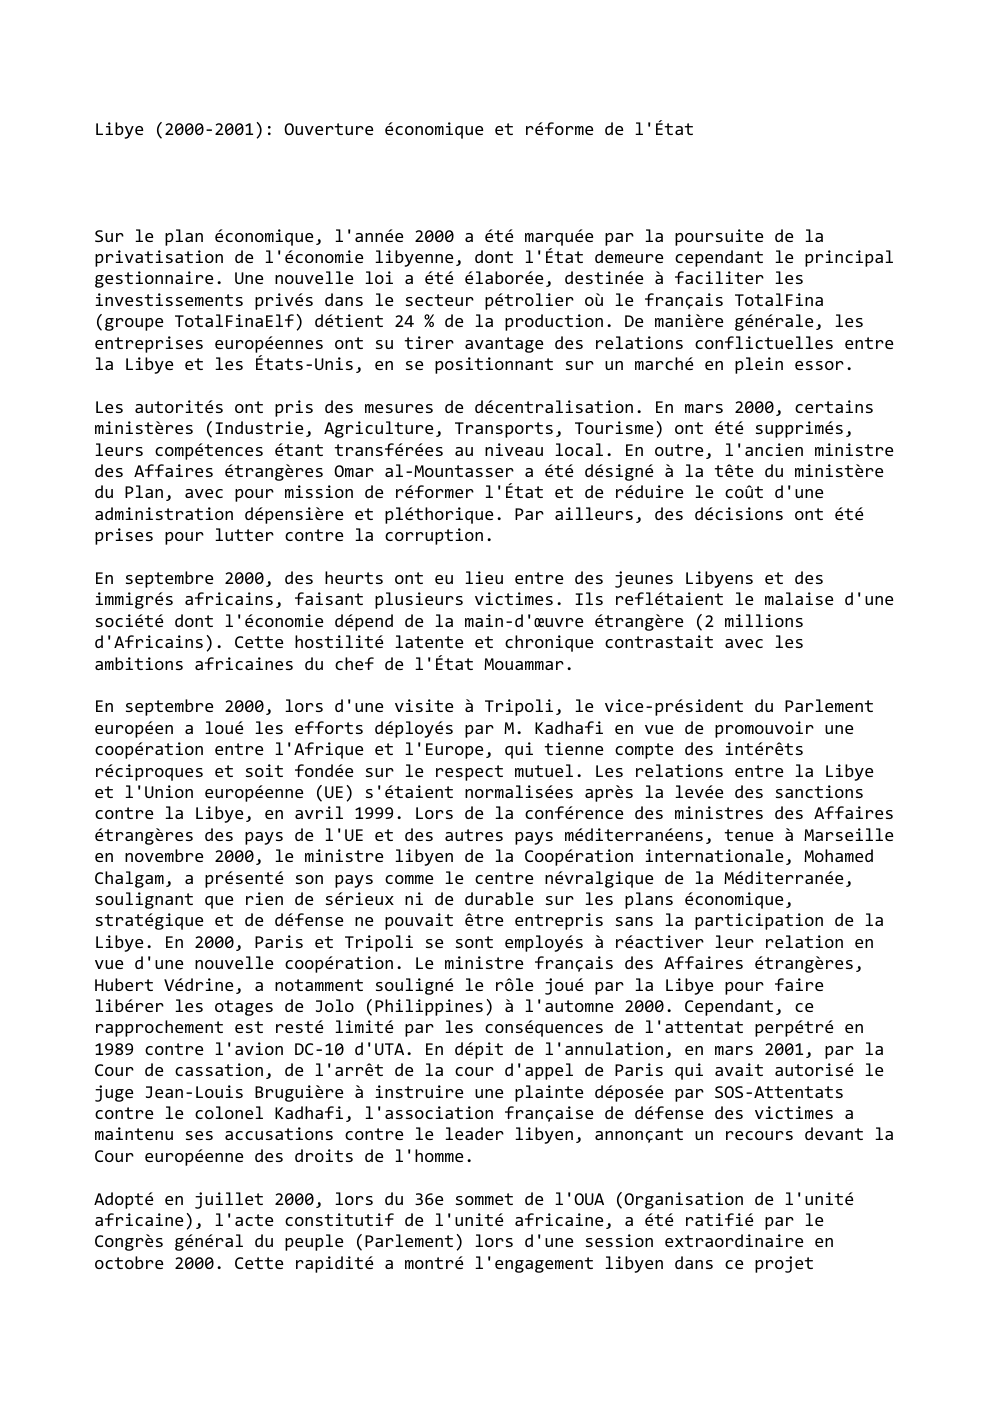 Prévisualisation du document Libye (2000-2001): Ouverture économique et réforme de l'État

Sur le plan économique, l'année 2000 a été marquée par la poursuite...